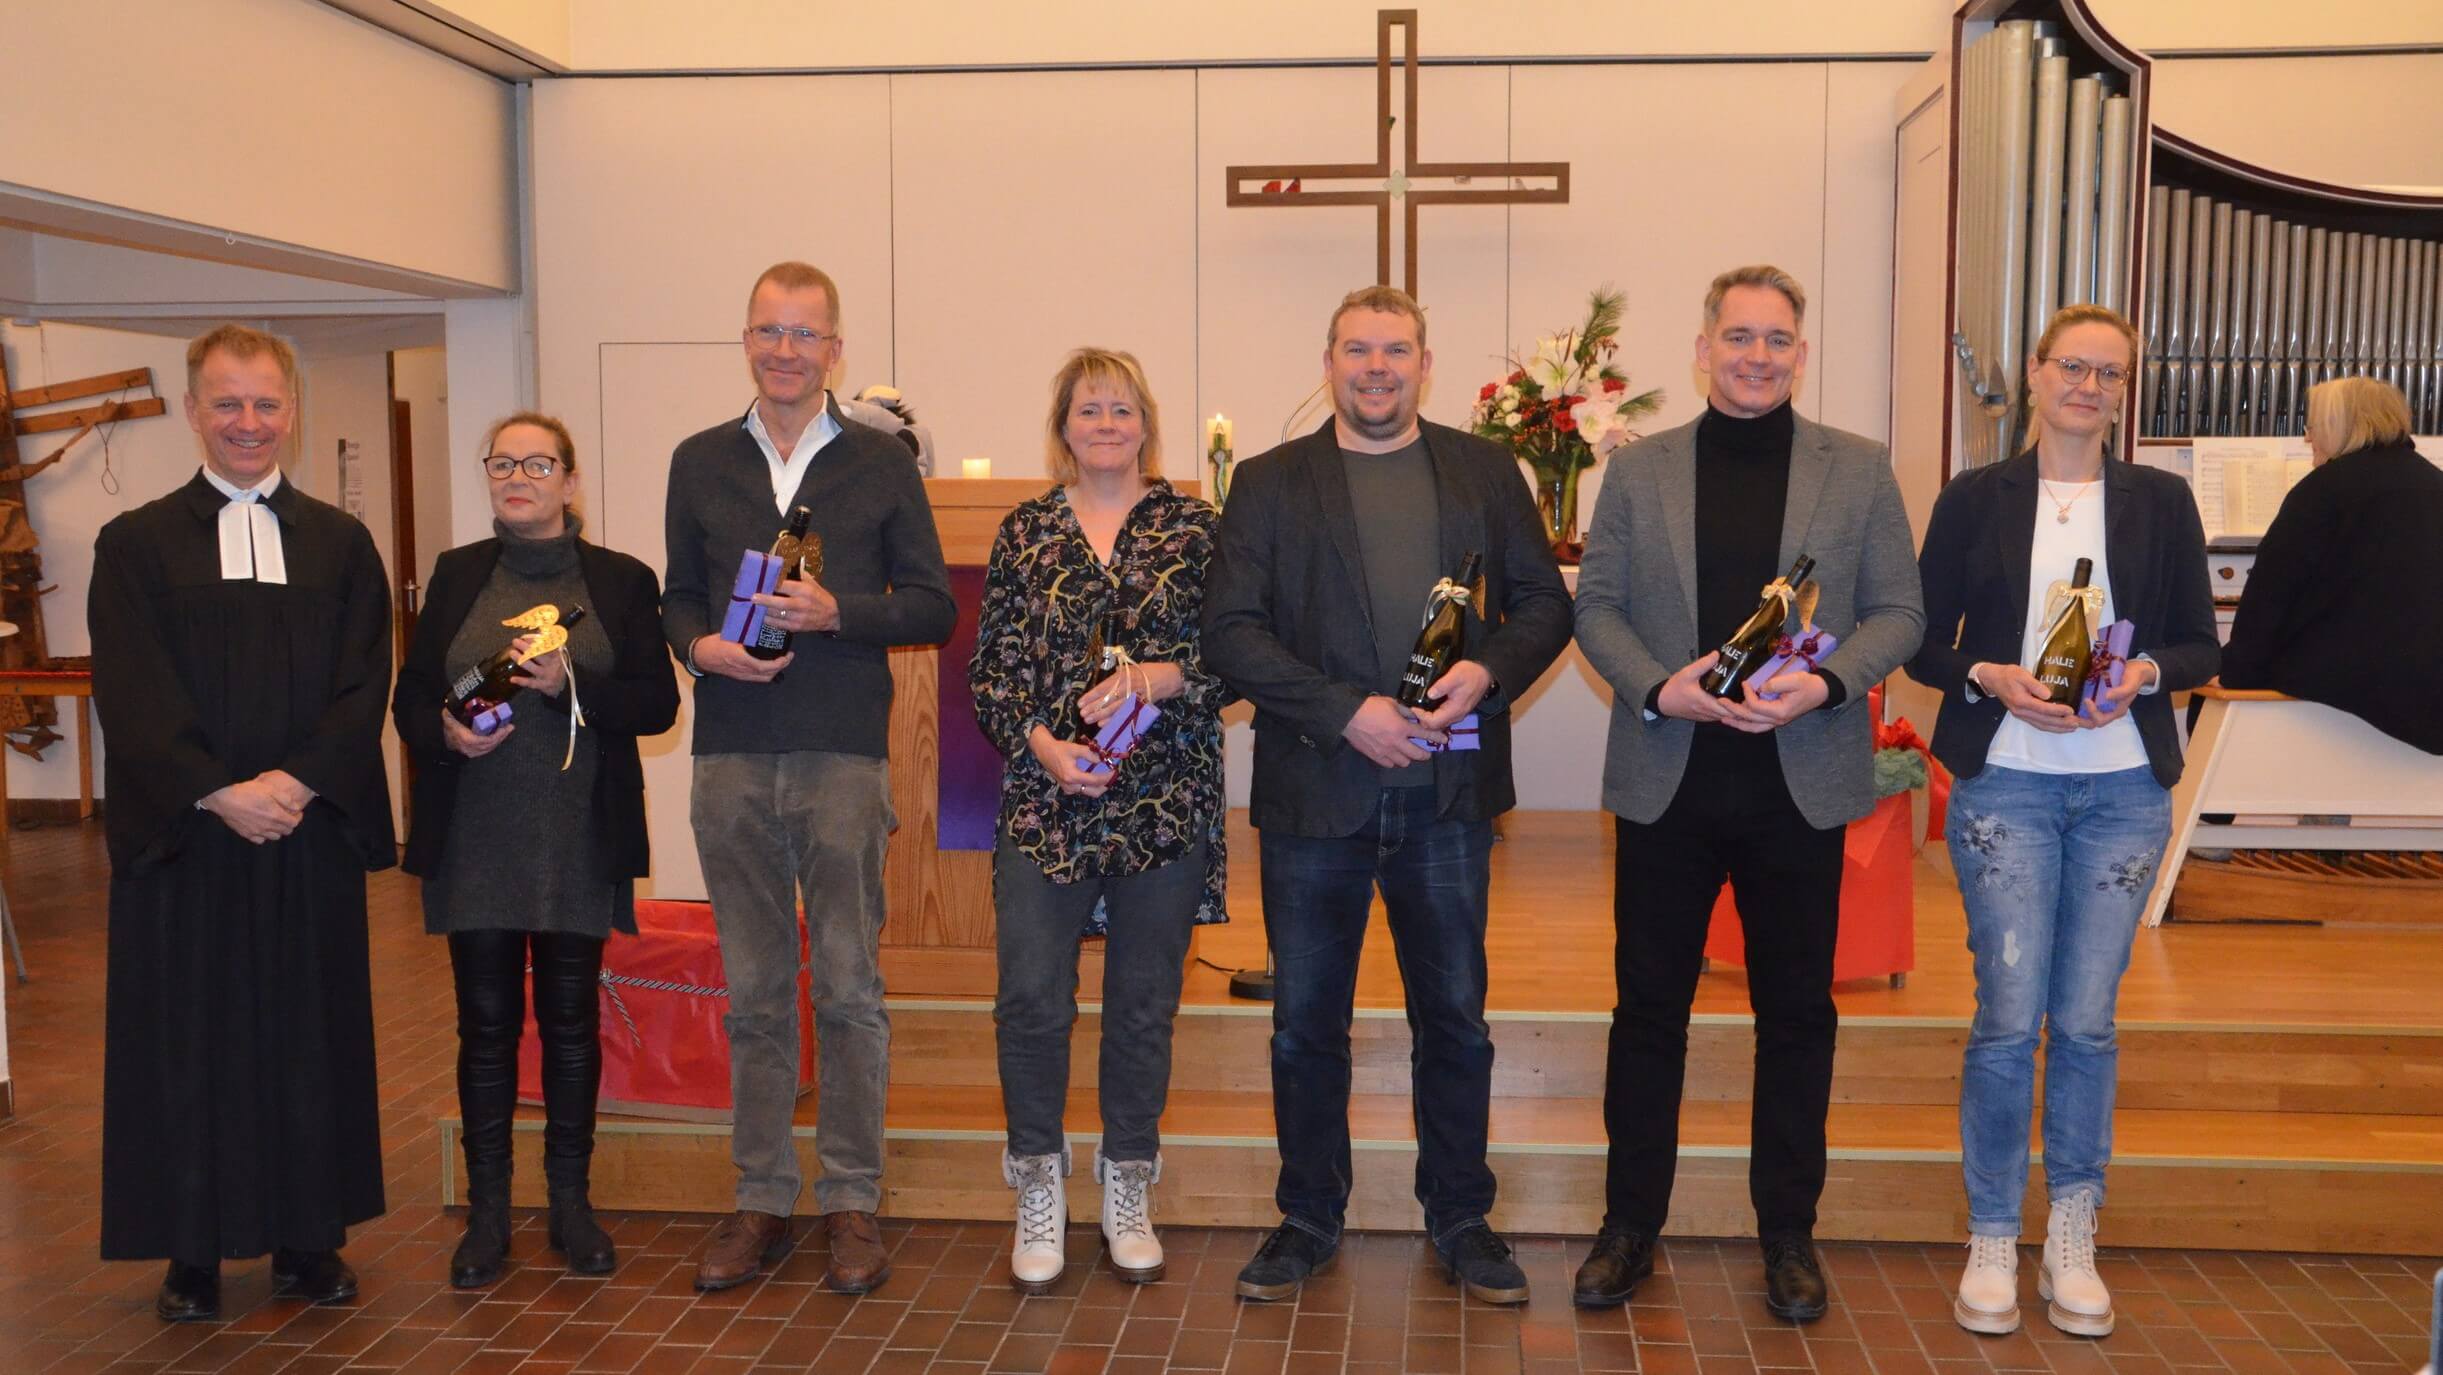 Ev. Kirchengemeinde Lüdinghausen verabschiedete den Bevollmächtigungsausschuss und begrüßte das neue Presbyterium